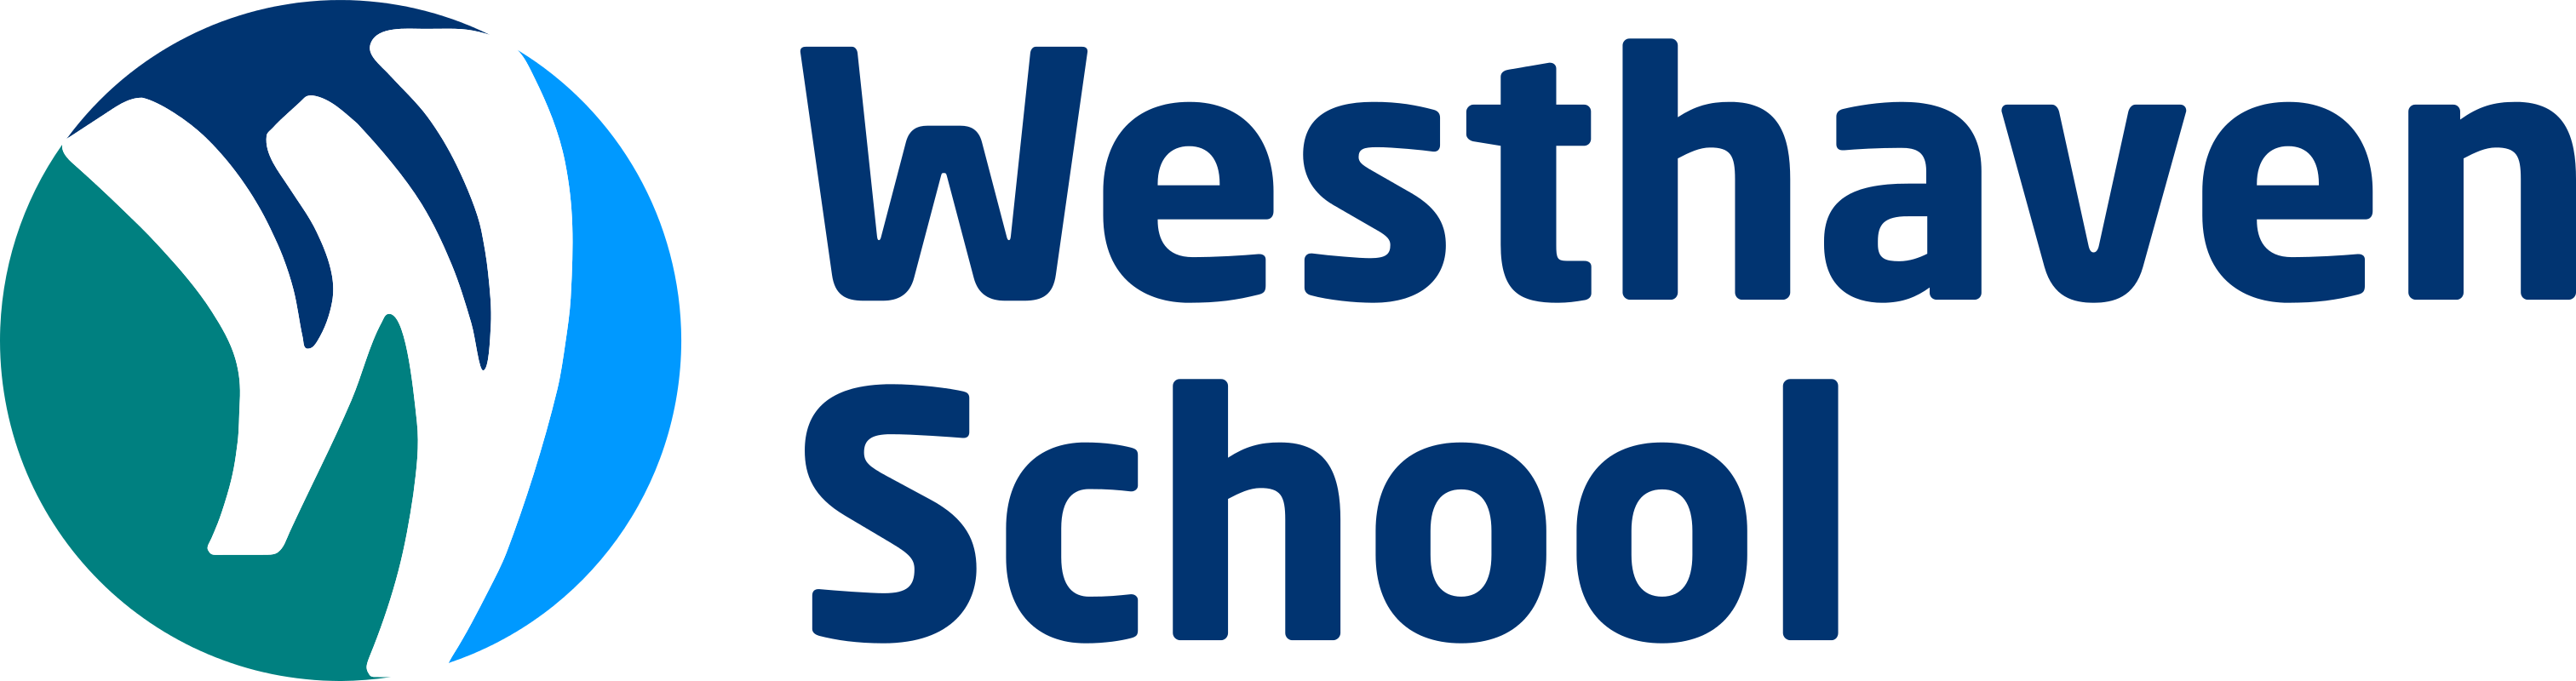 Westhaven School